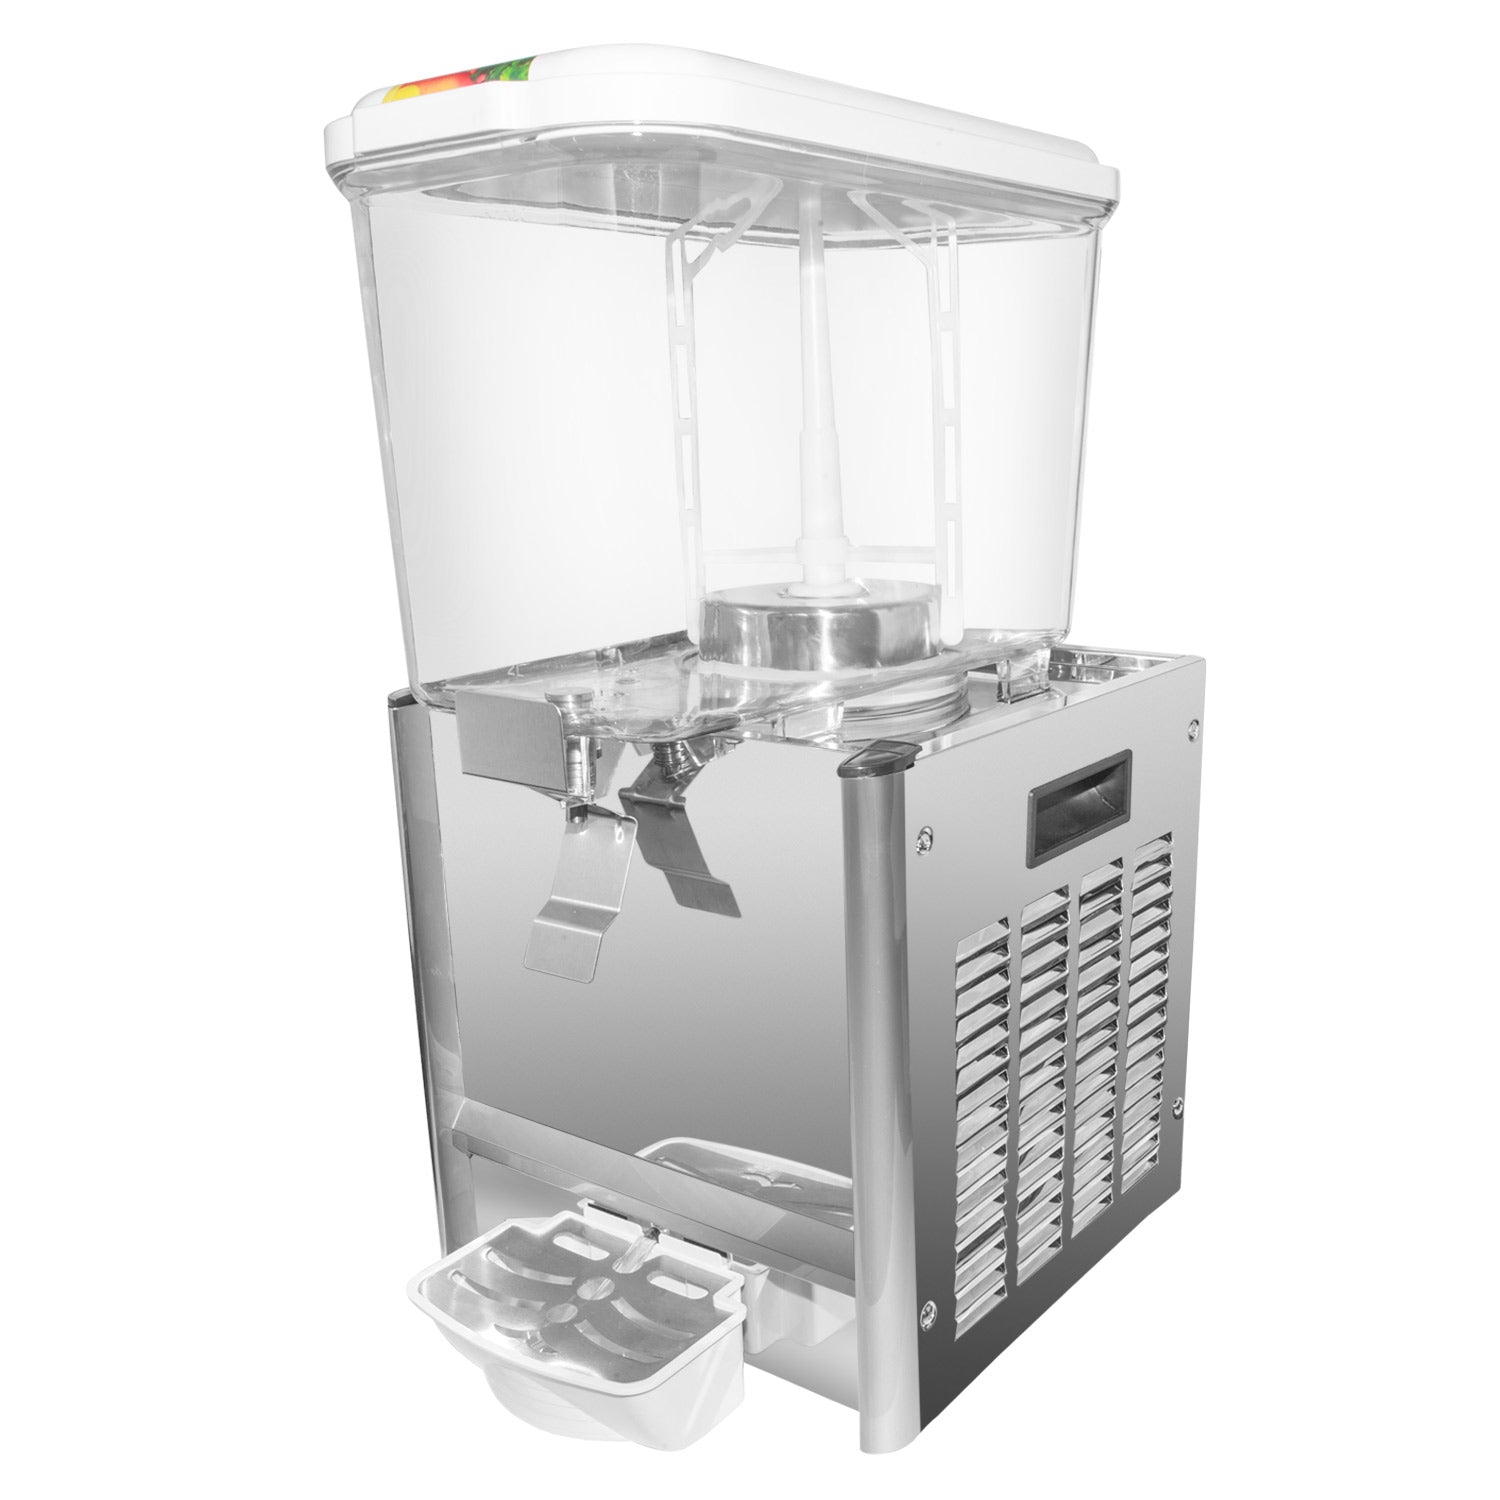 A-DG6LYP1 Drink Dispenser | 1-Tank Juice Dispenser | Cold & Hot Drinks